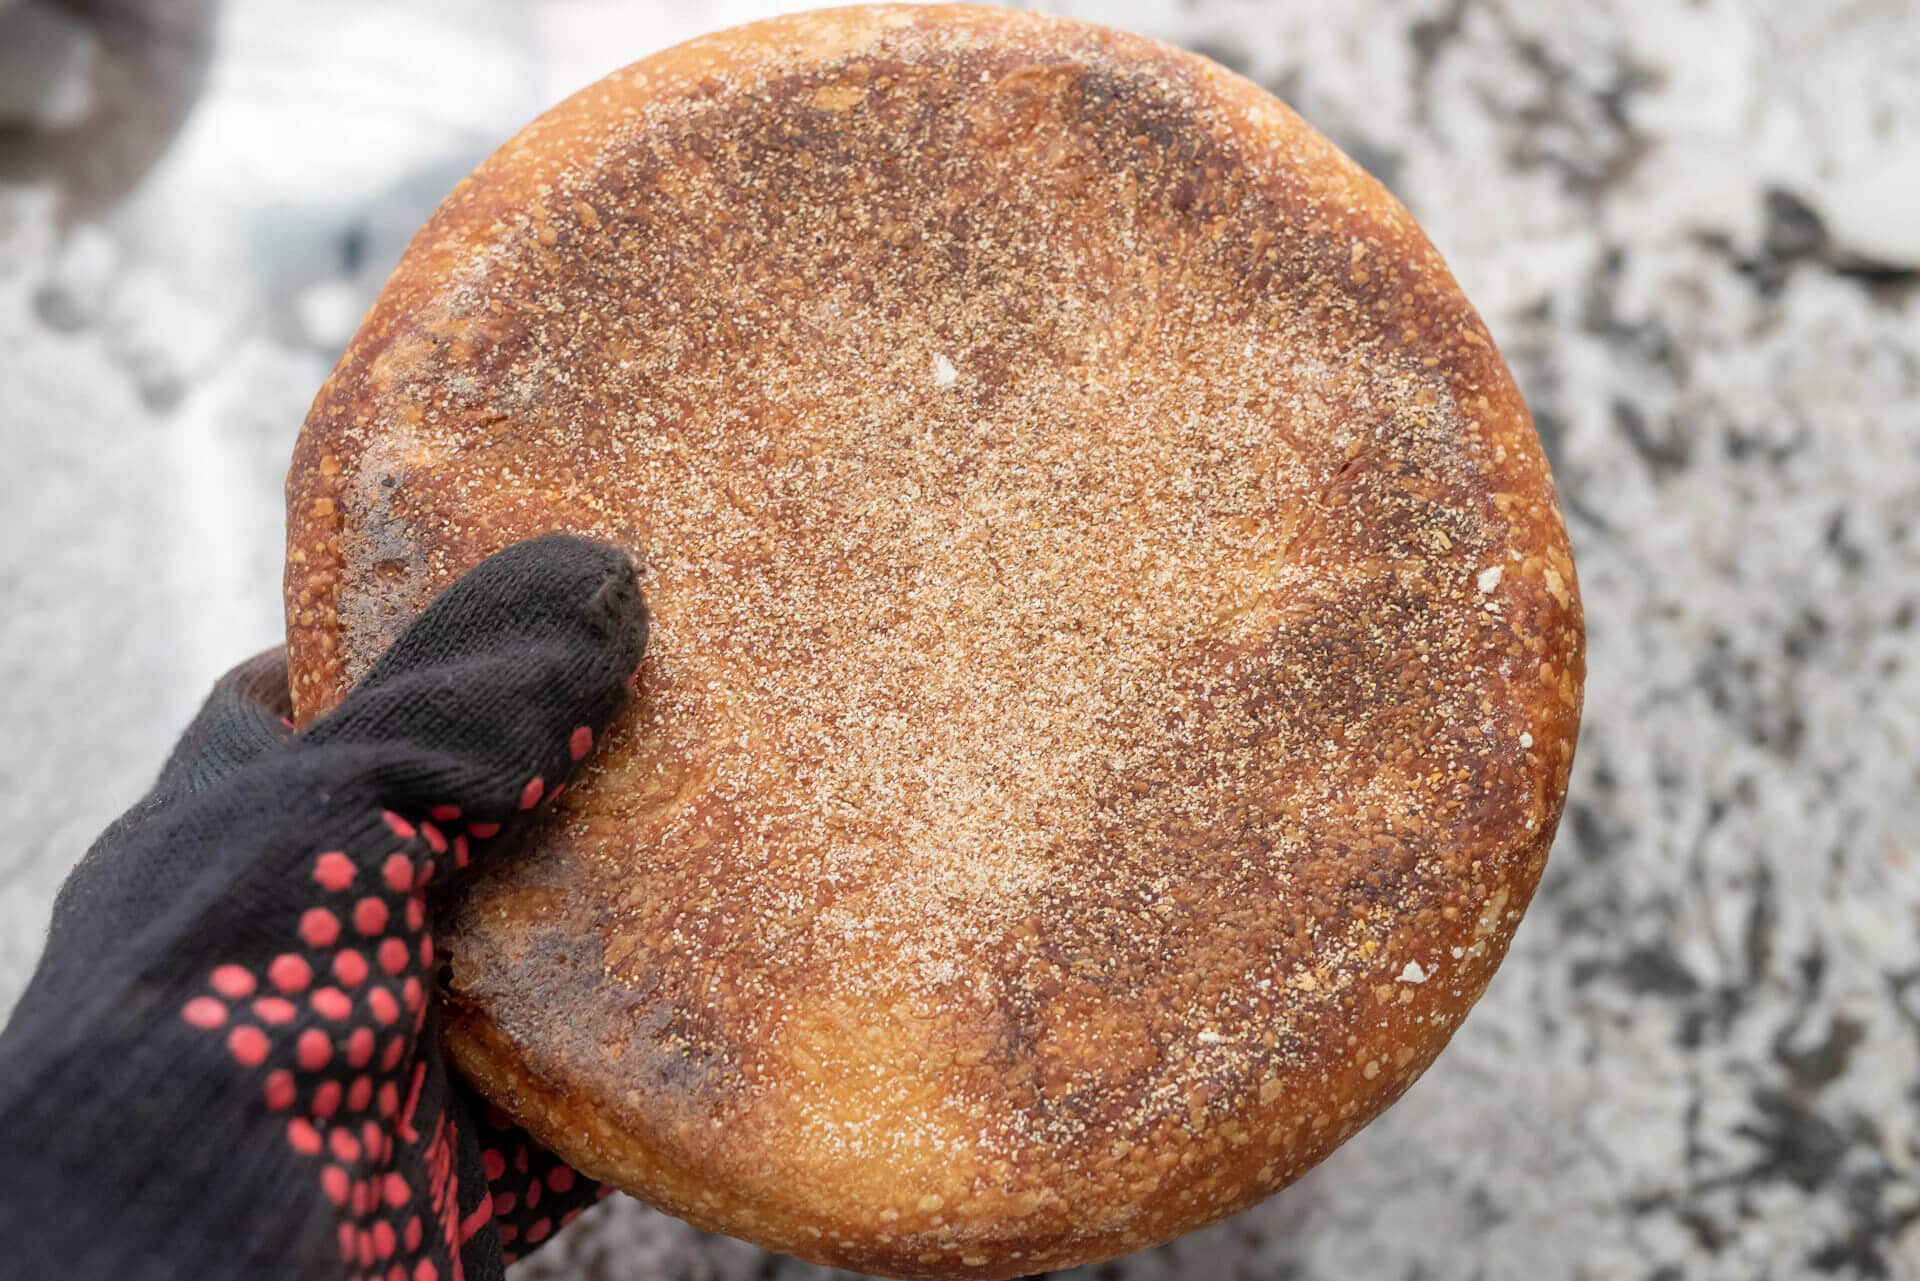 La parte inferior de la boule horneada con germen/salvado de trigo se utiliza como aislante.